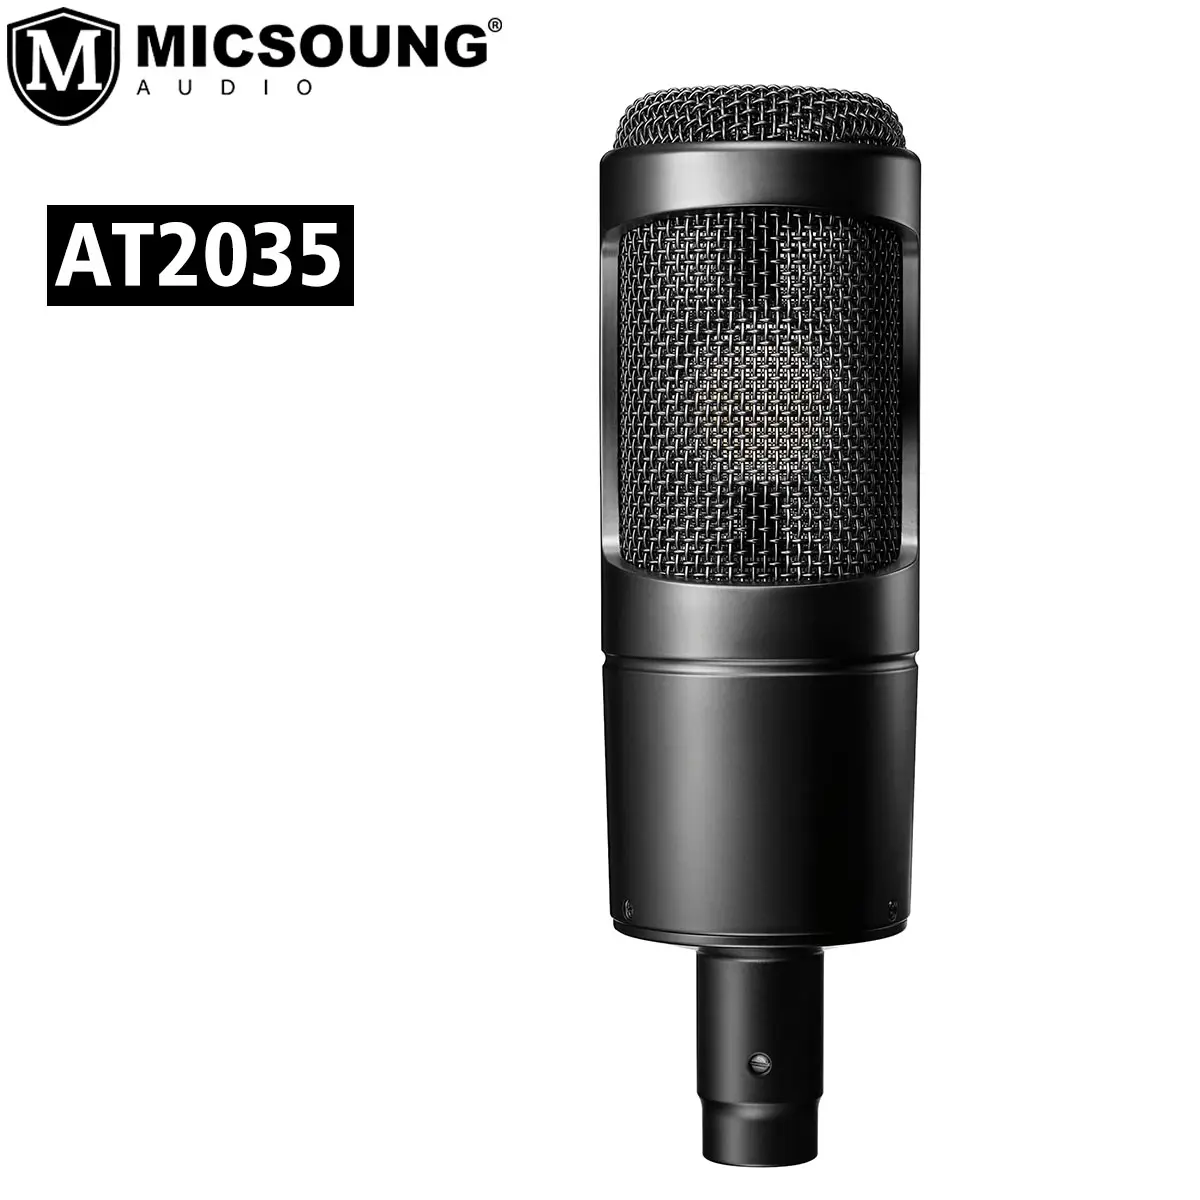 Micrófono condensador cardioide AT2035 AT 2035, con amplio rango dinámico, para grabación de estudio profesional, para Audio, tecnología